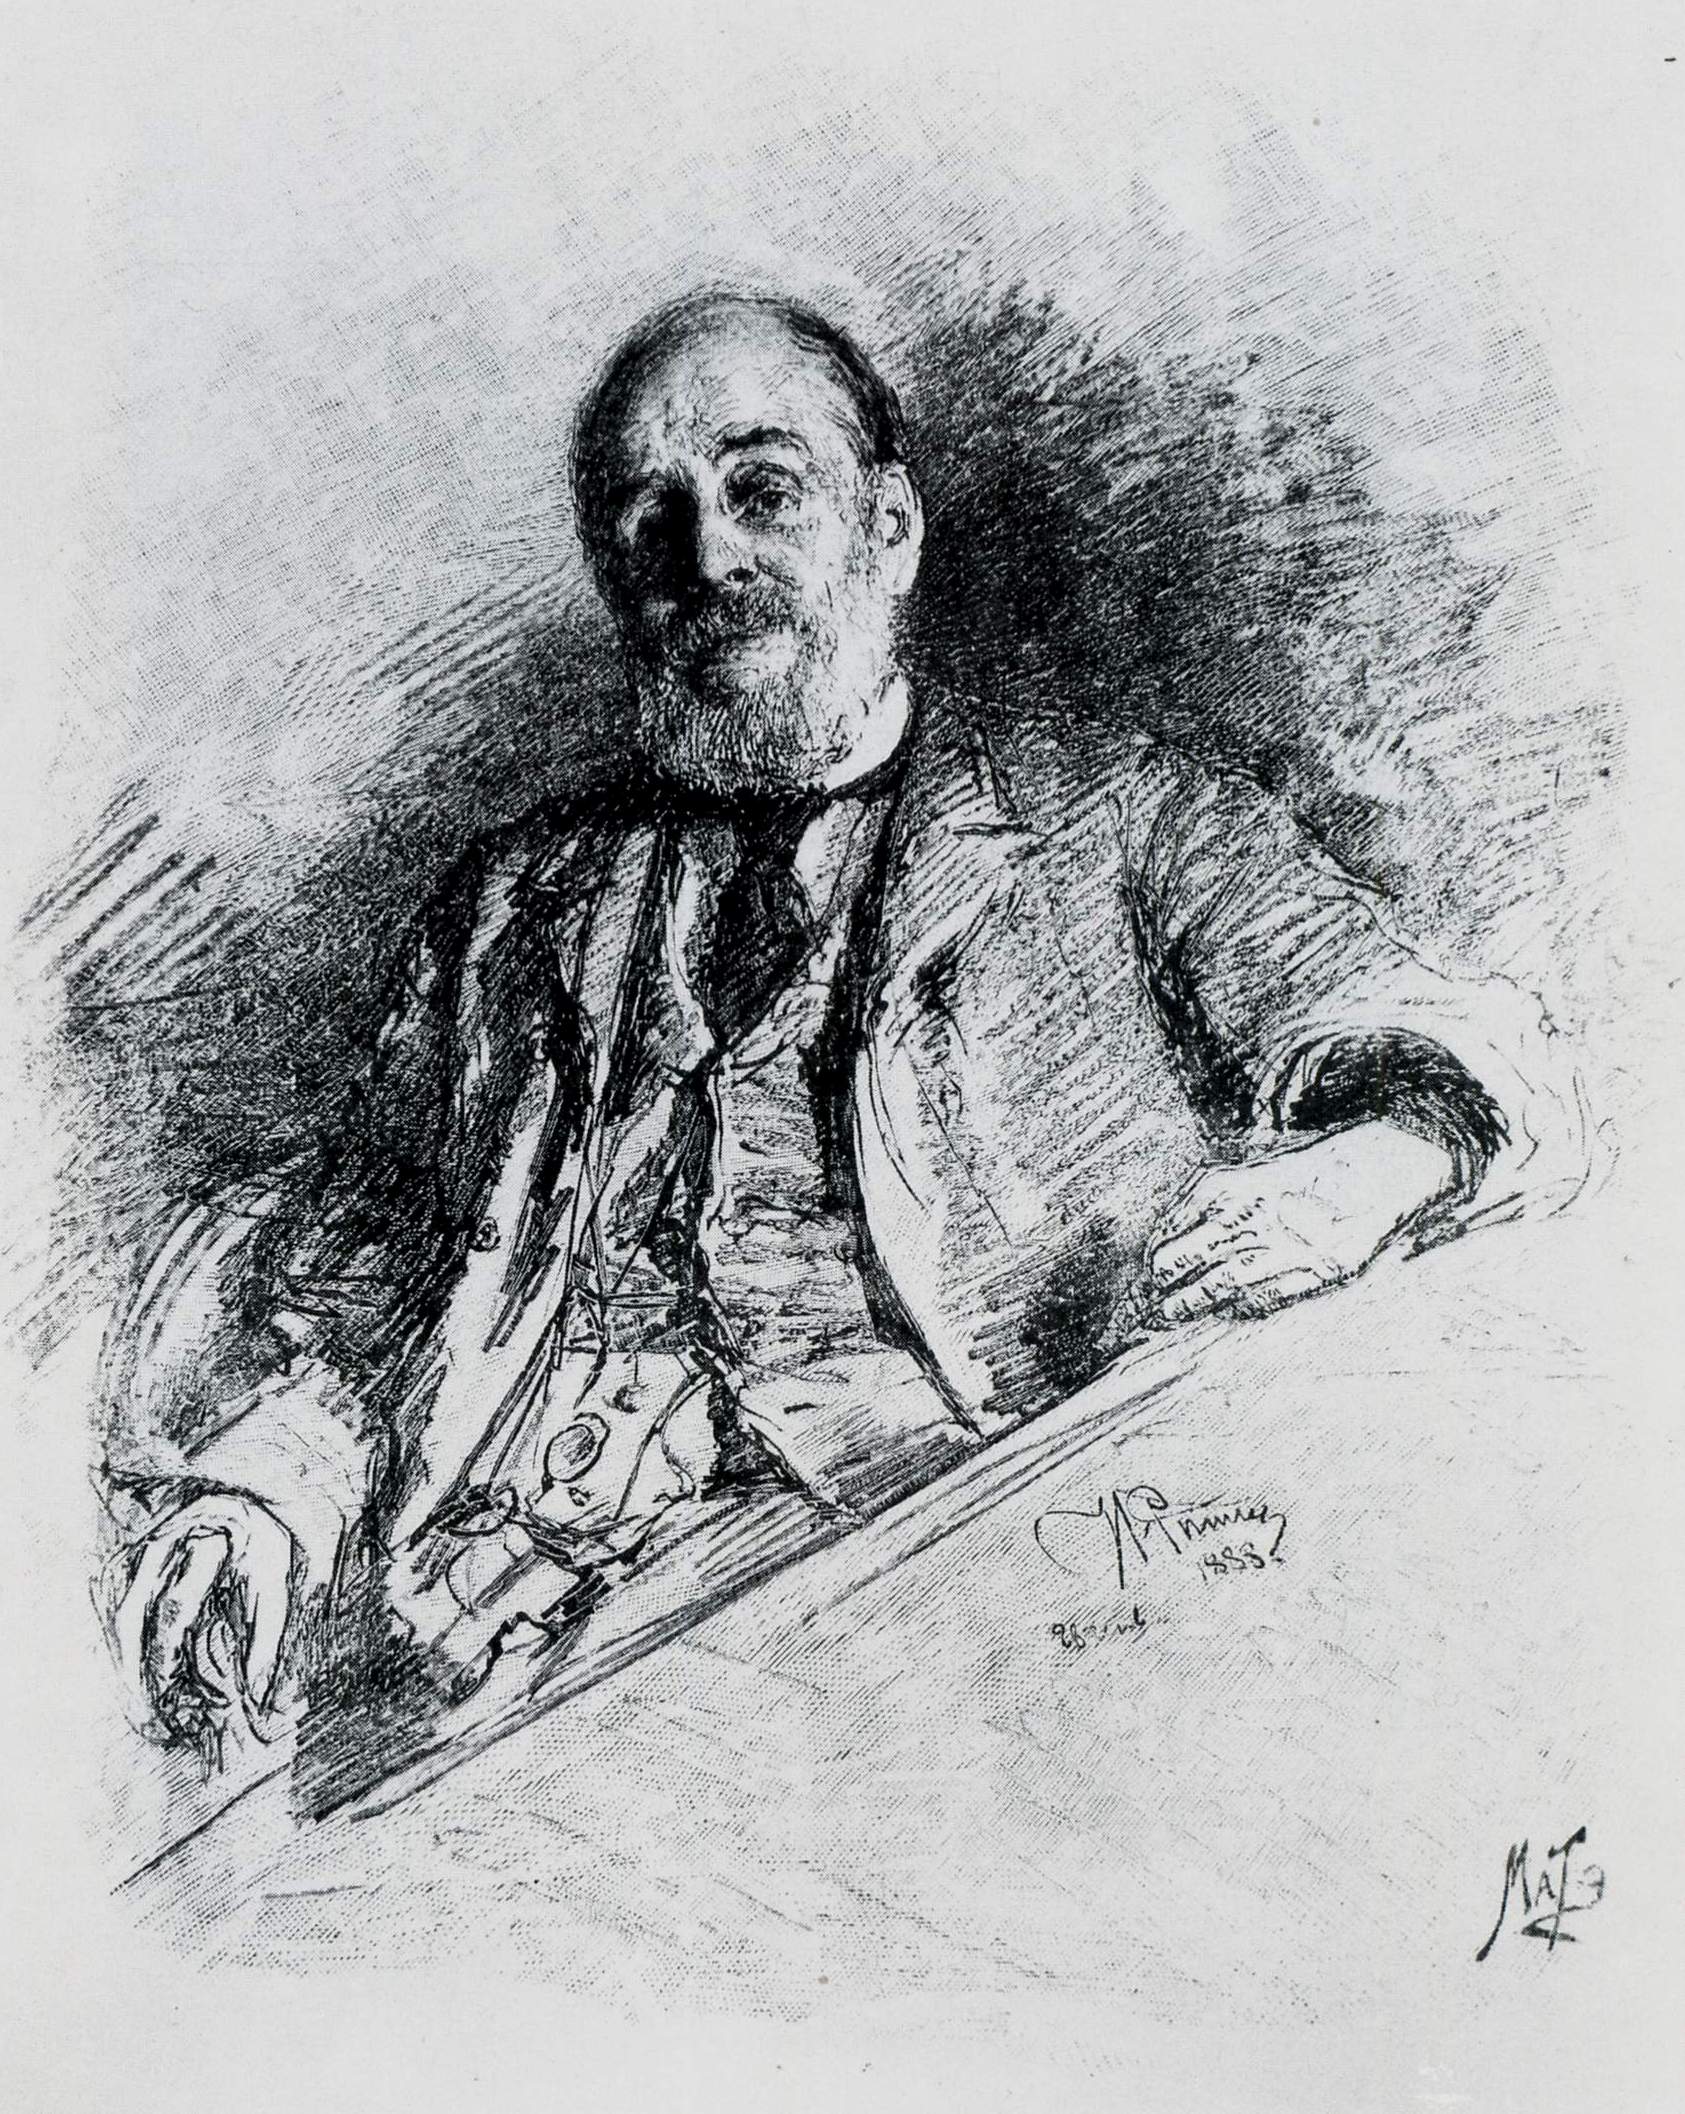 Матэ. Портрет писателя И.А. Гончарова. 1891